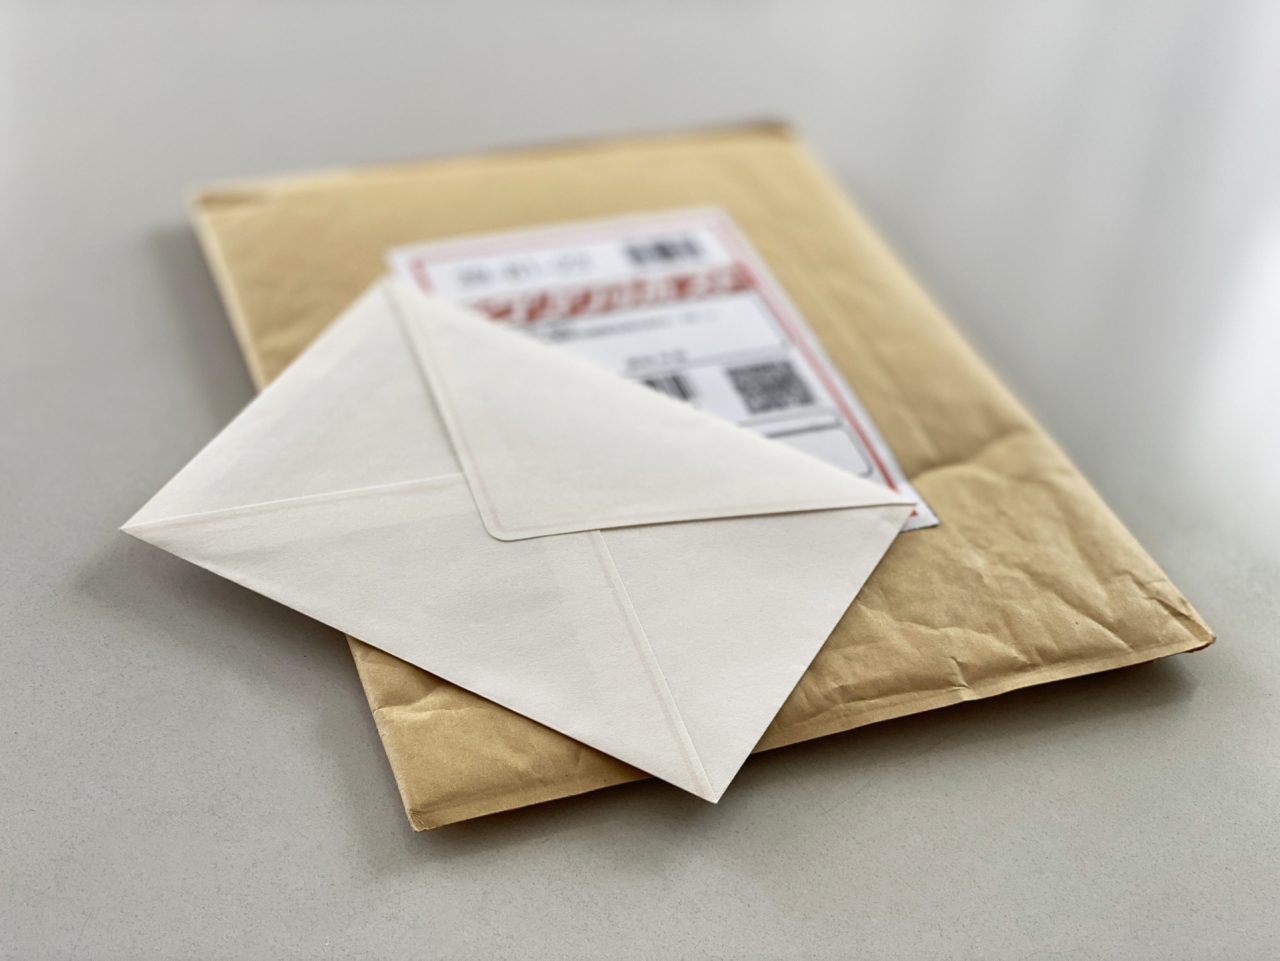 重要書類のオススメ郵送方法とは 3種類の方法を紹介 封筒印刷製作所コラム